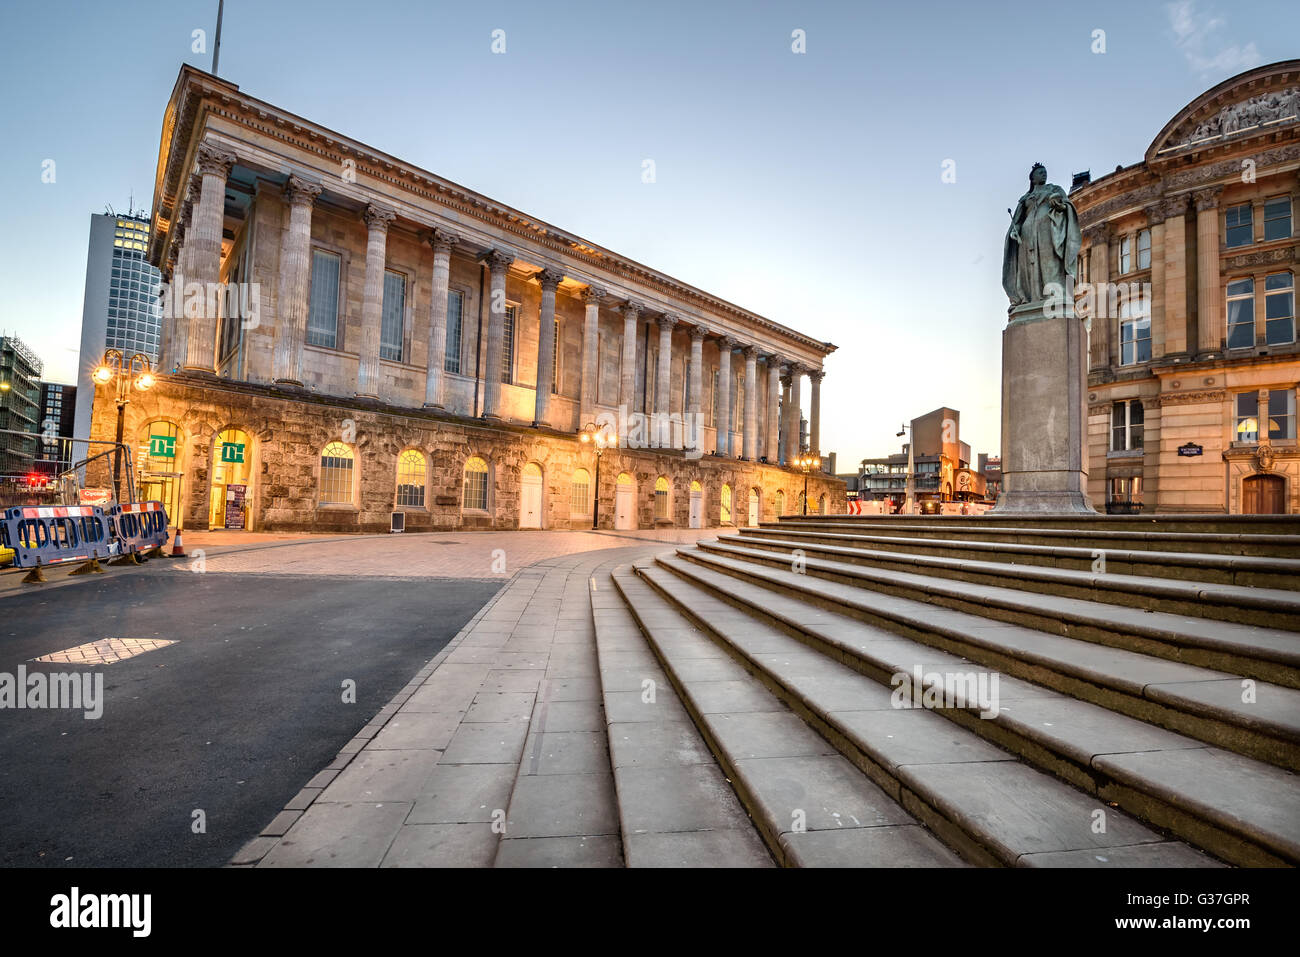 Ayuntamiento de Birmingham está situado en la Plaza Victoria, Birmingham, Inglaterra. Foto de stock